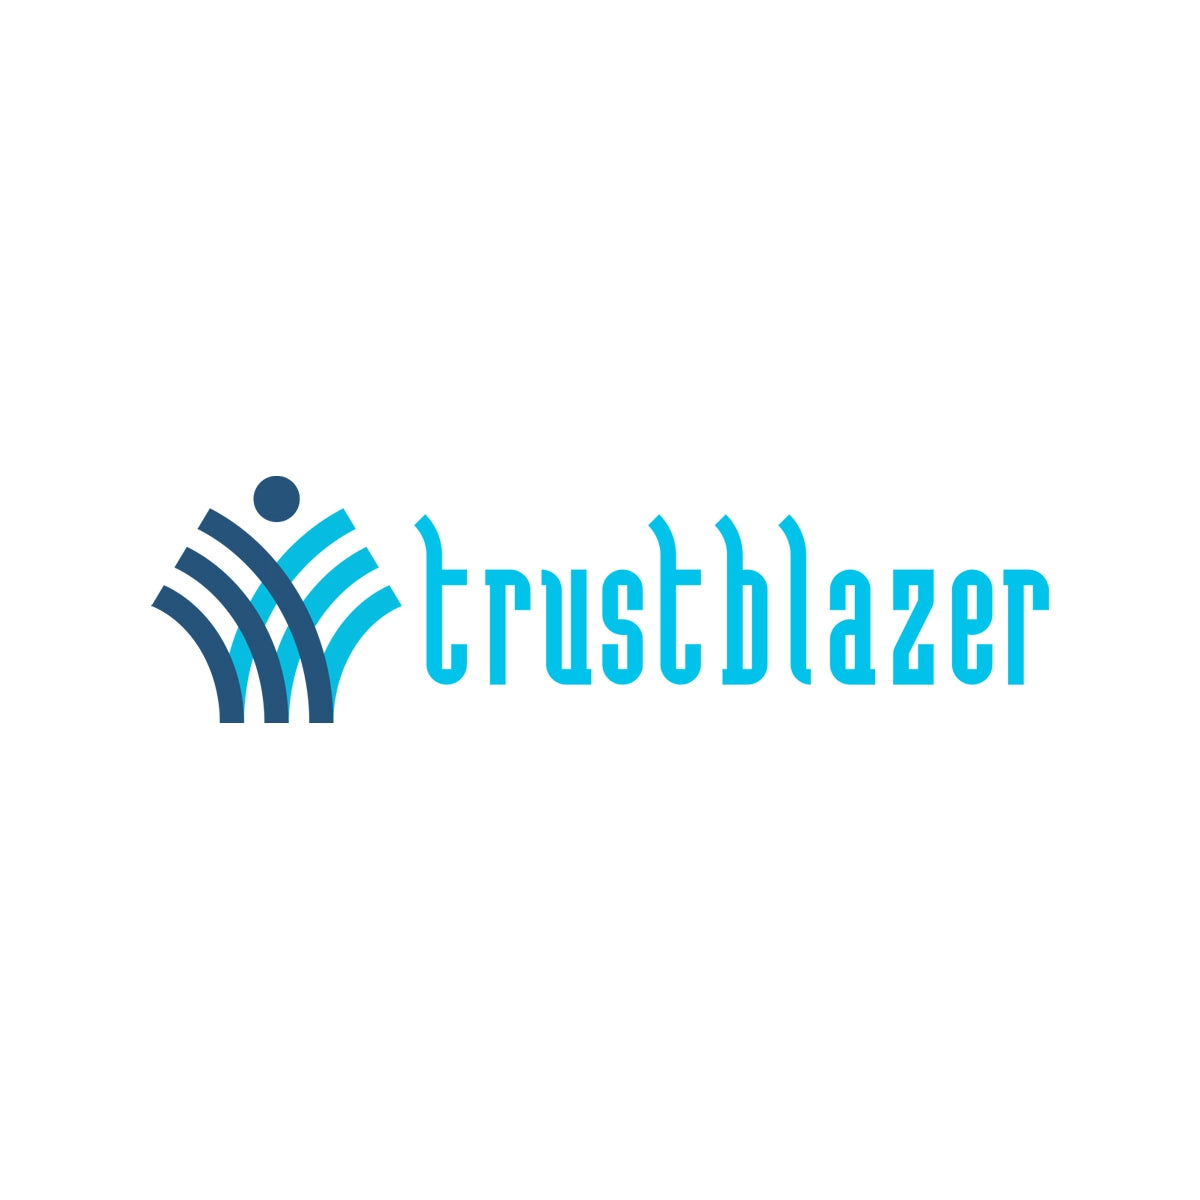 trustblazer.com